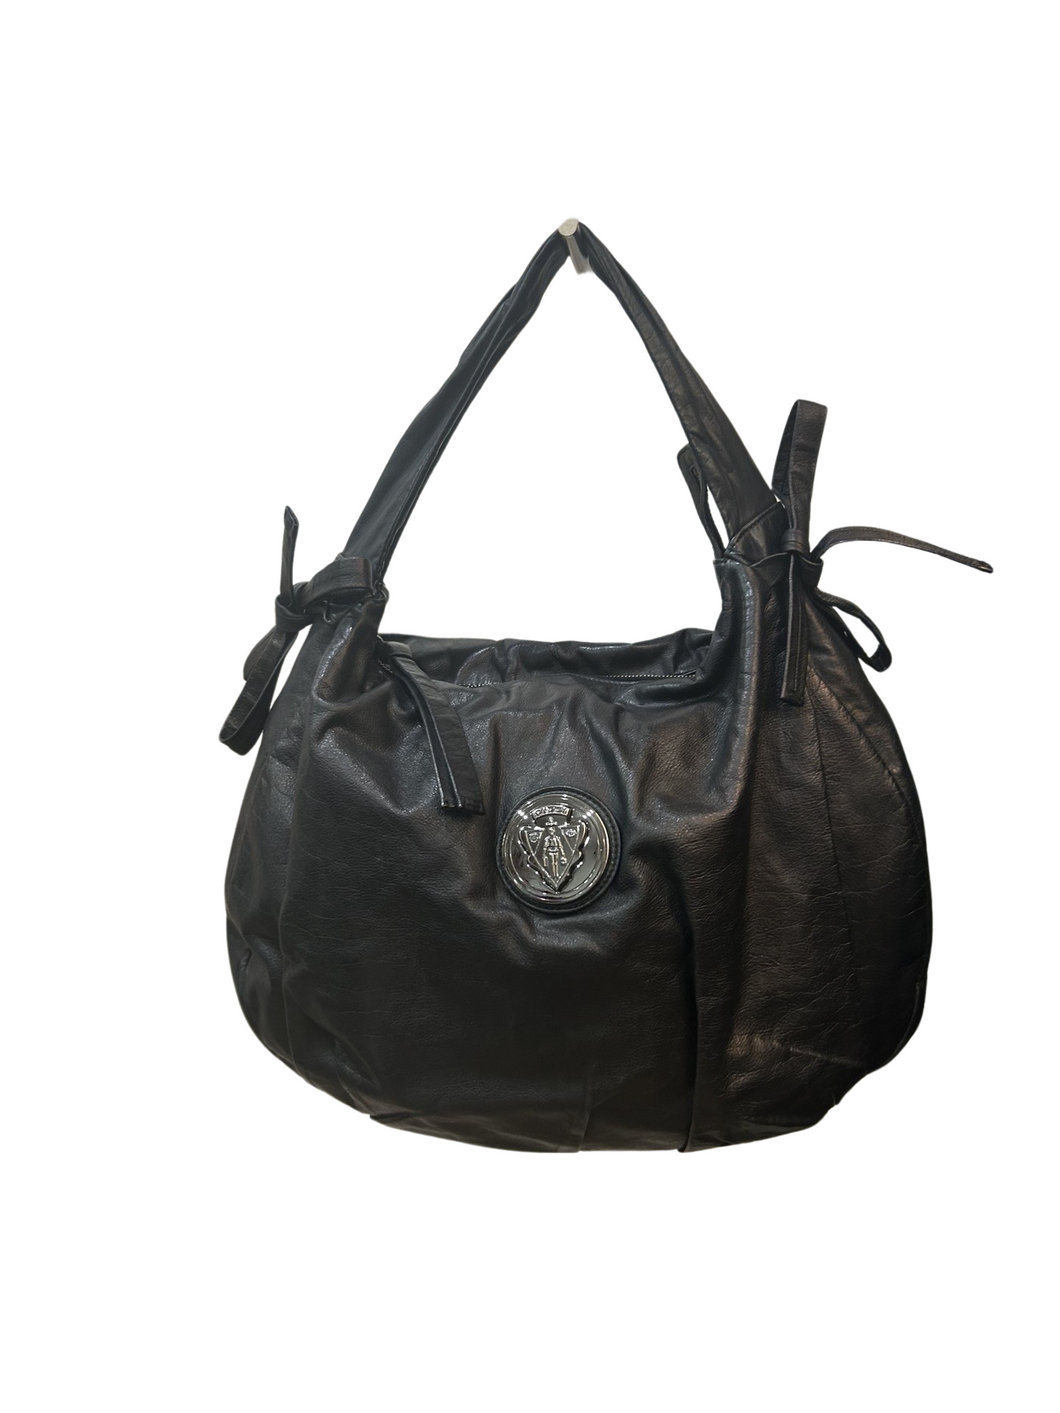 Gucci Hysteria Large Shoulder Bag in Black